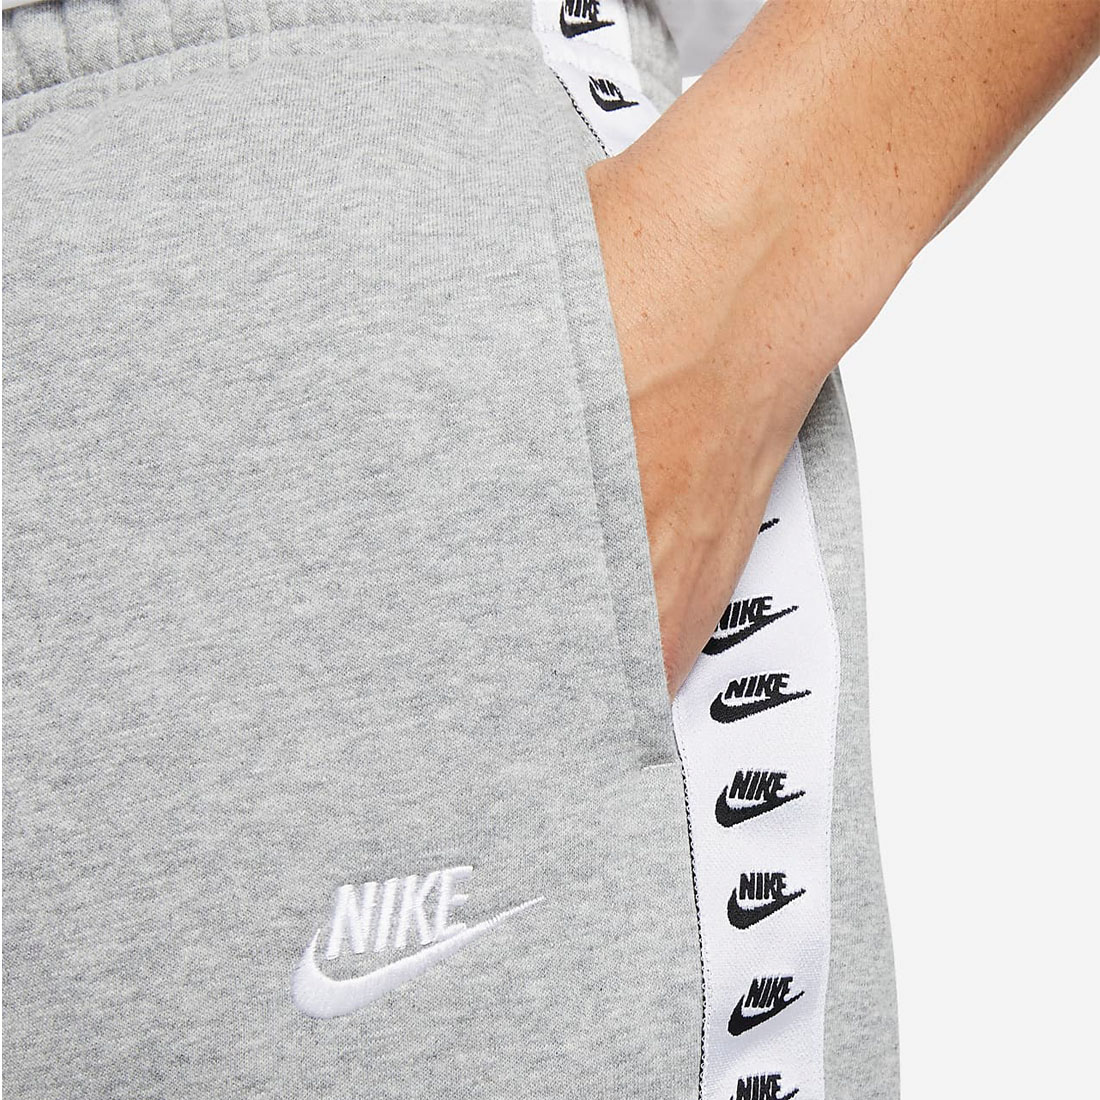 Nike sportswear essential fleece joggers in multi